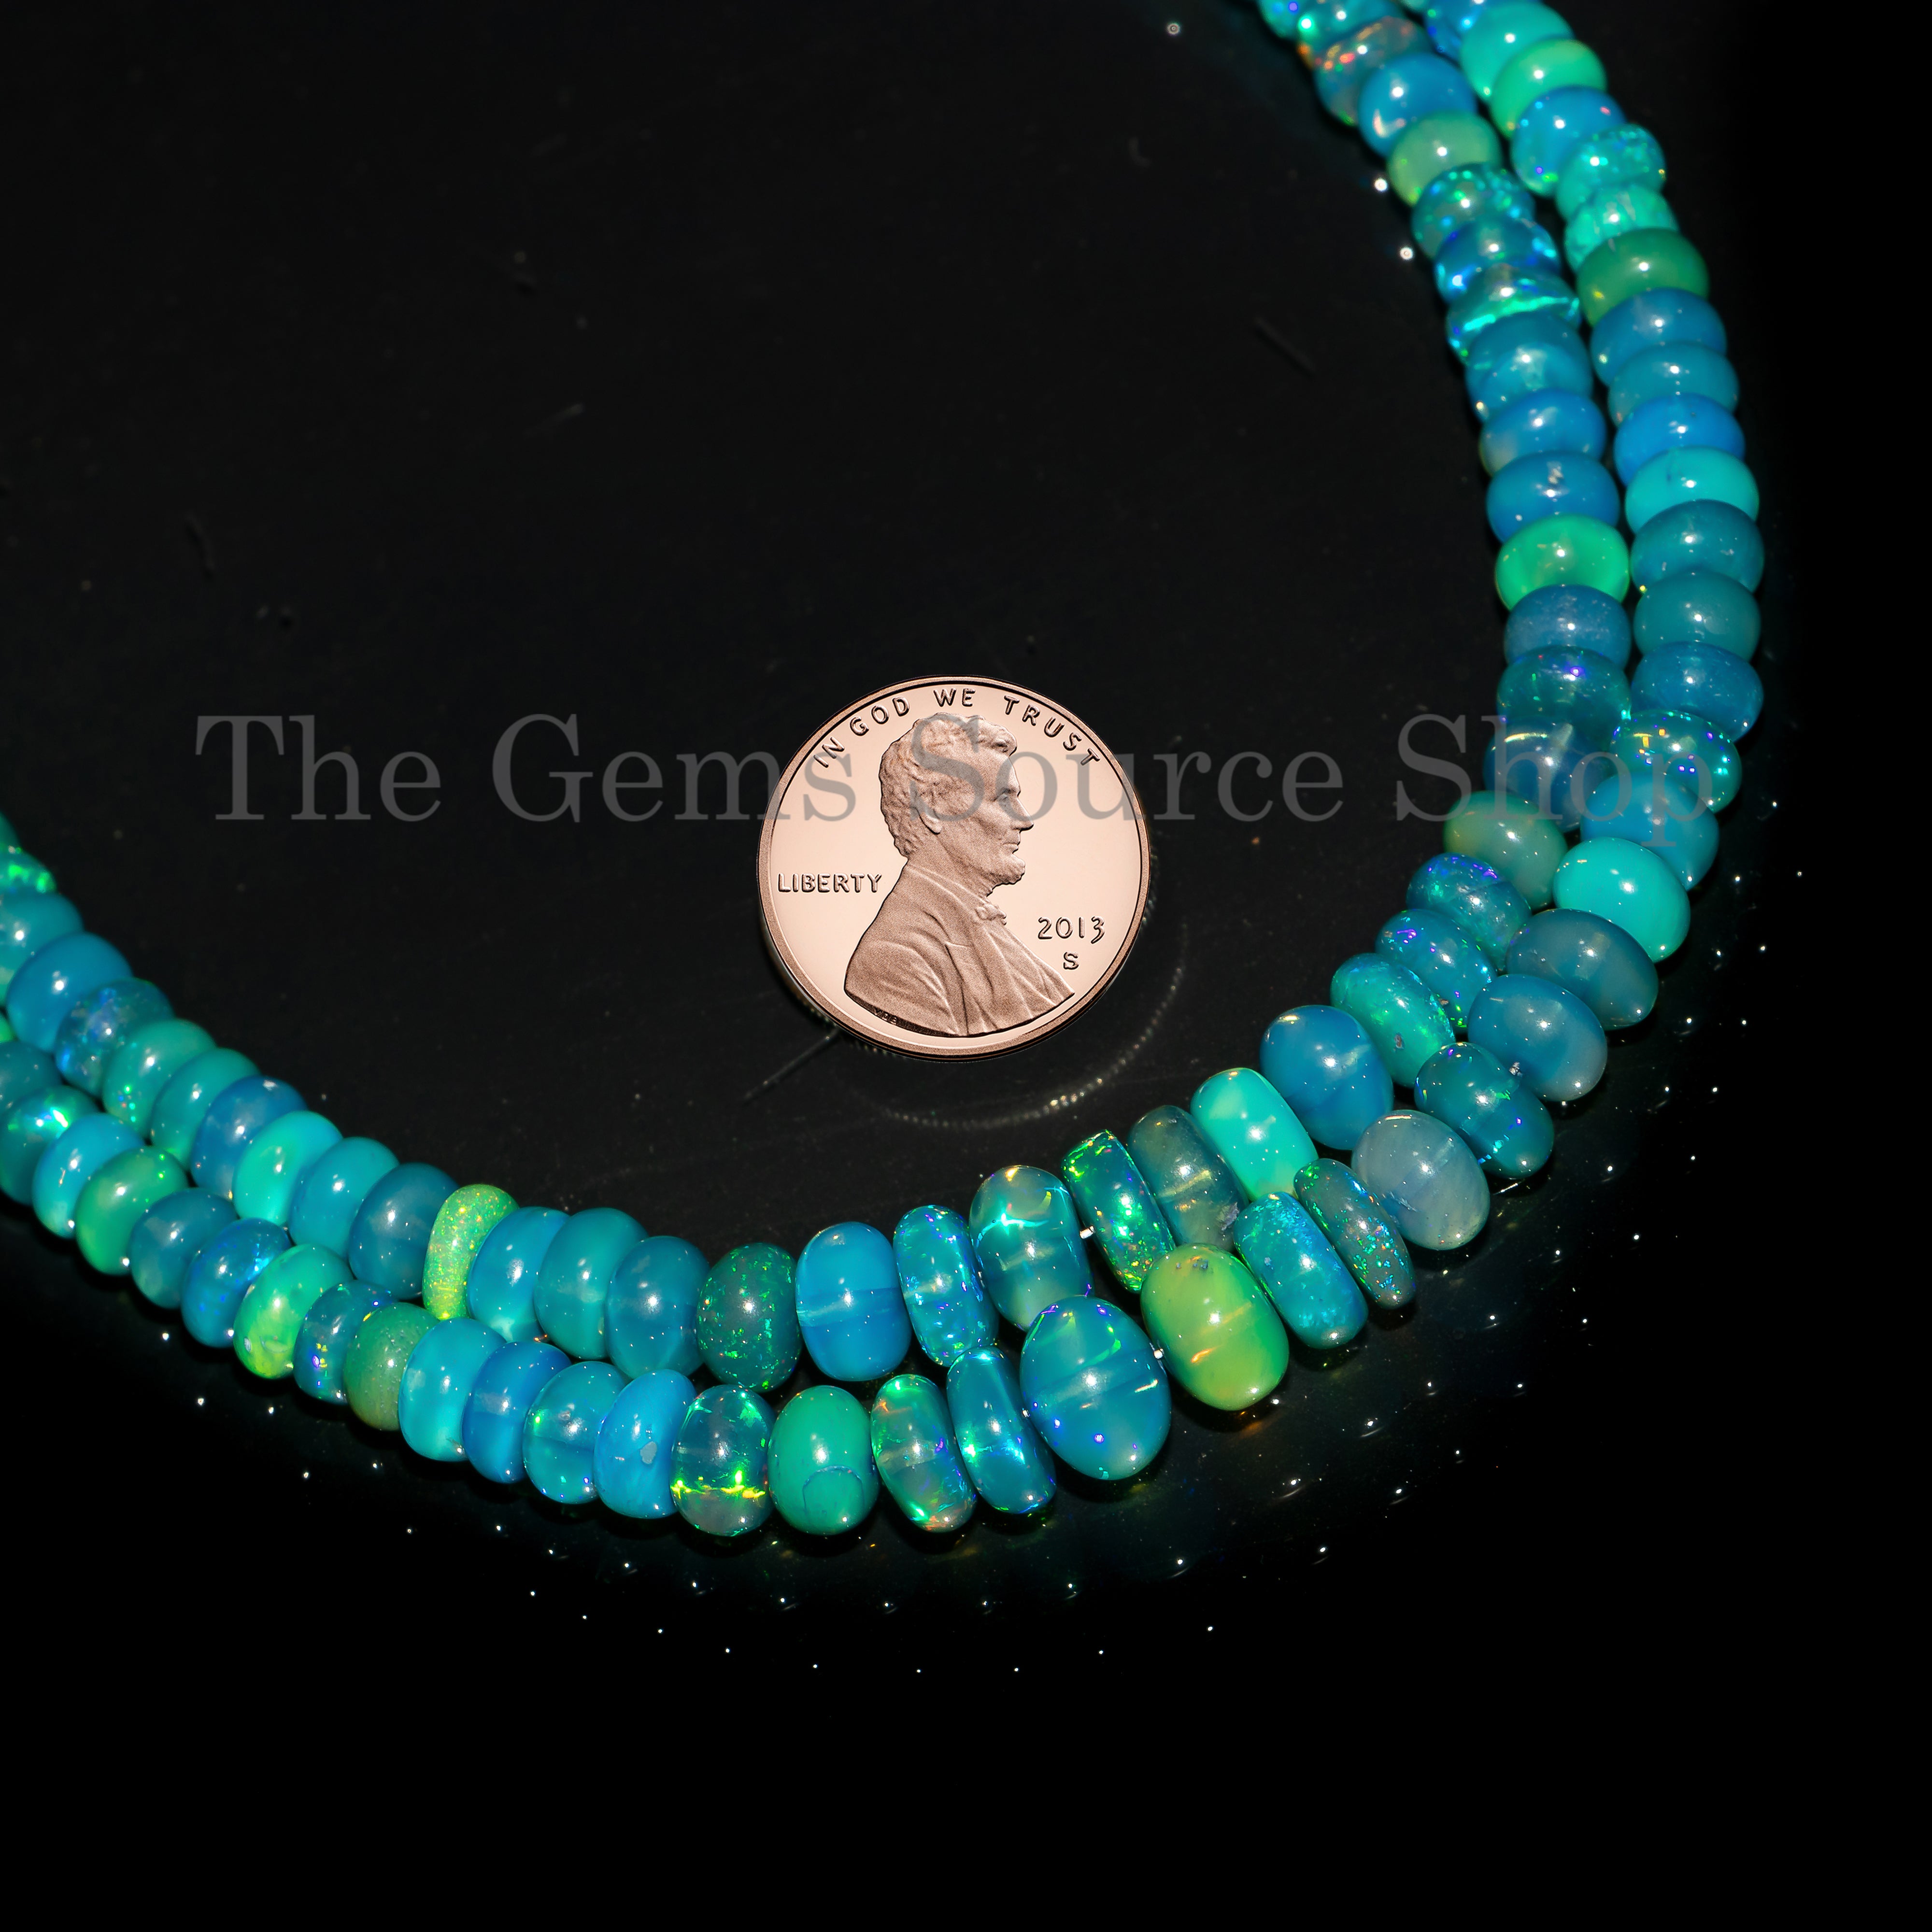 dark lavender opal plain rondelle beads TGS-4649